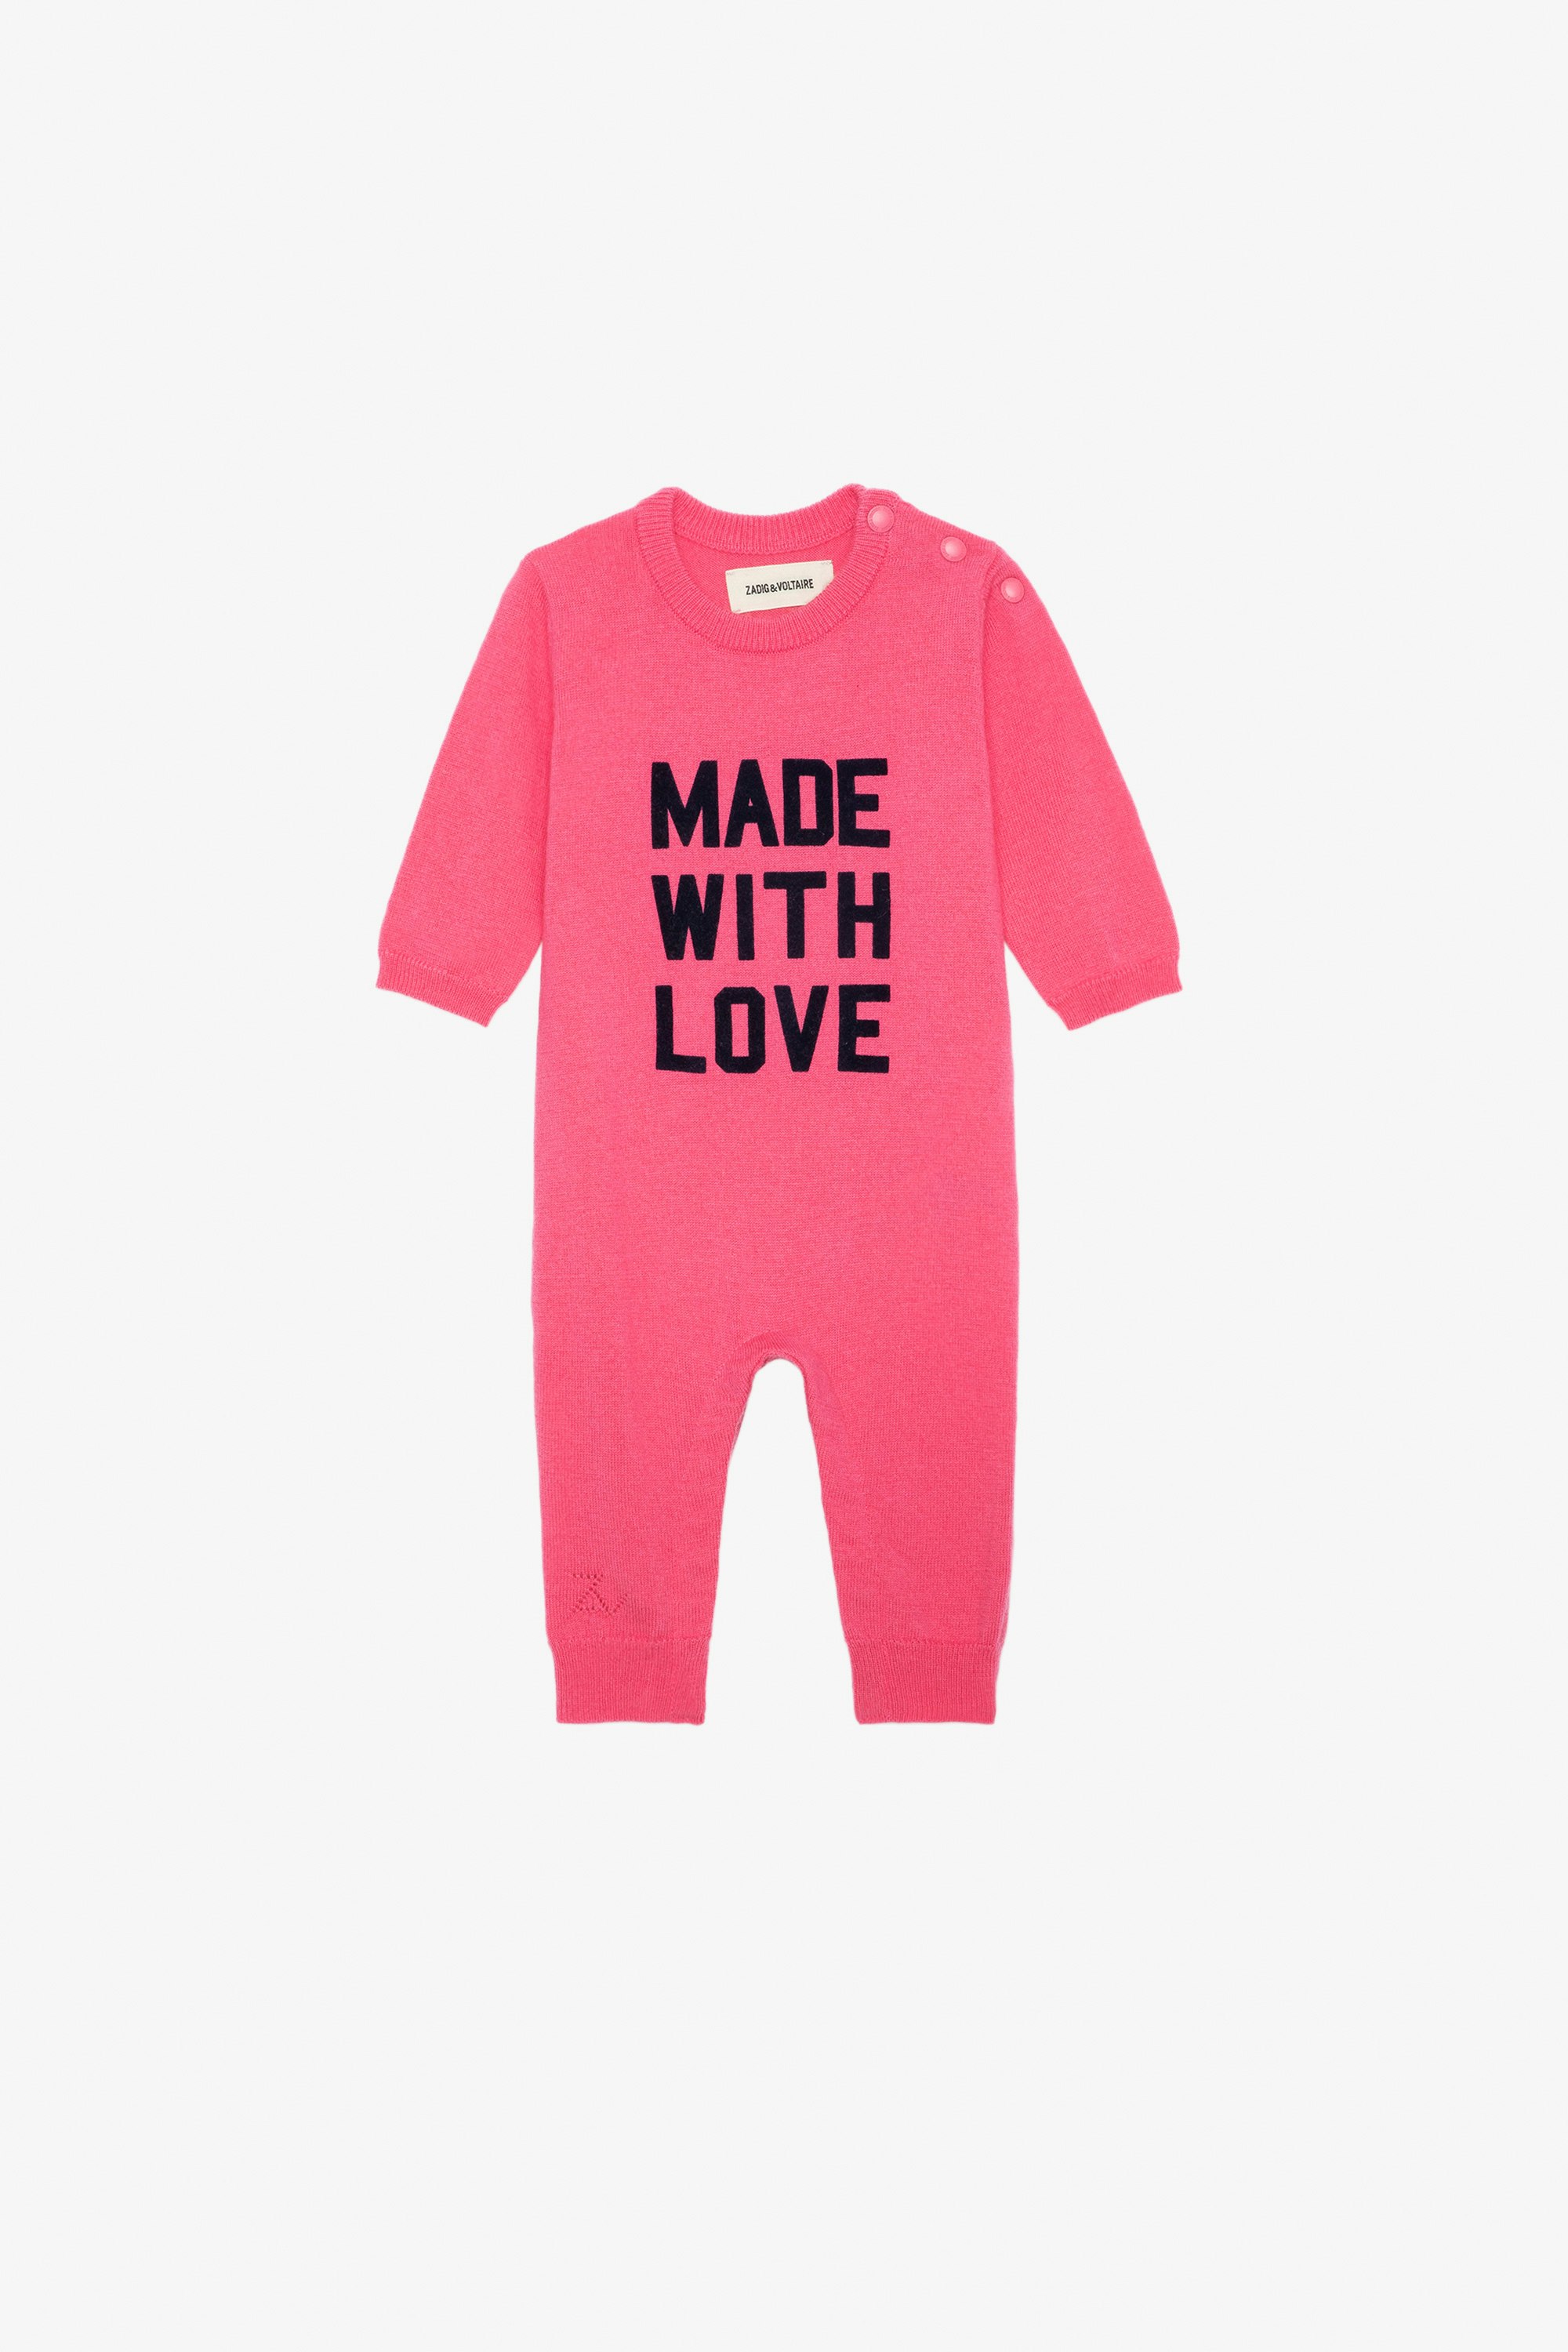 Combinaison Didou Bébé - Combinaison en maille tricot rose à message "Made With Love" bébé.